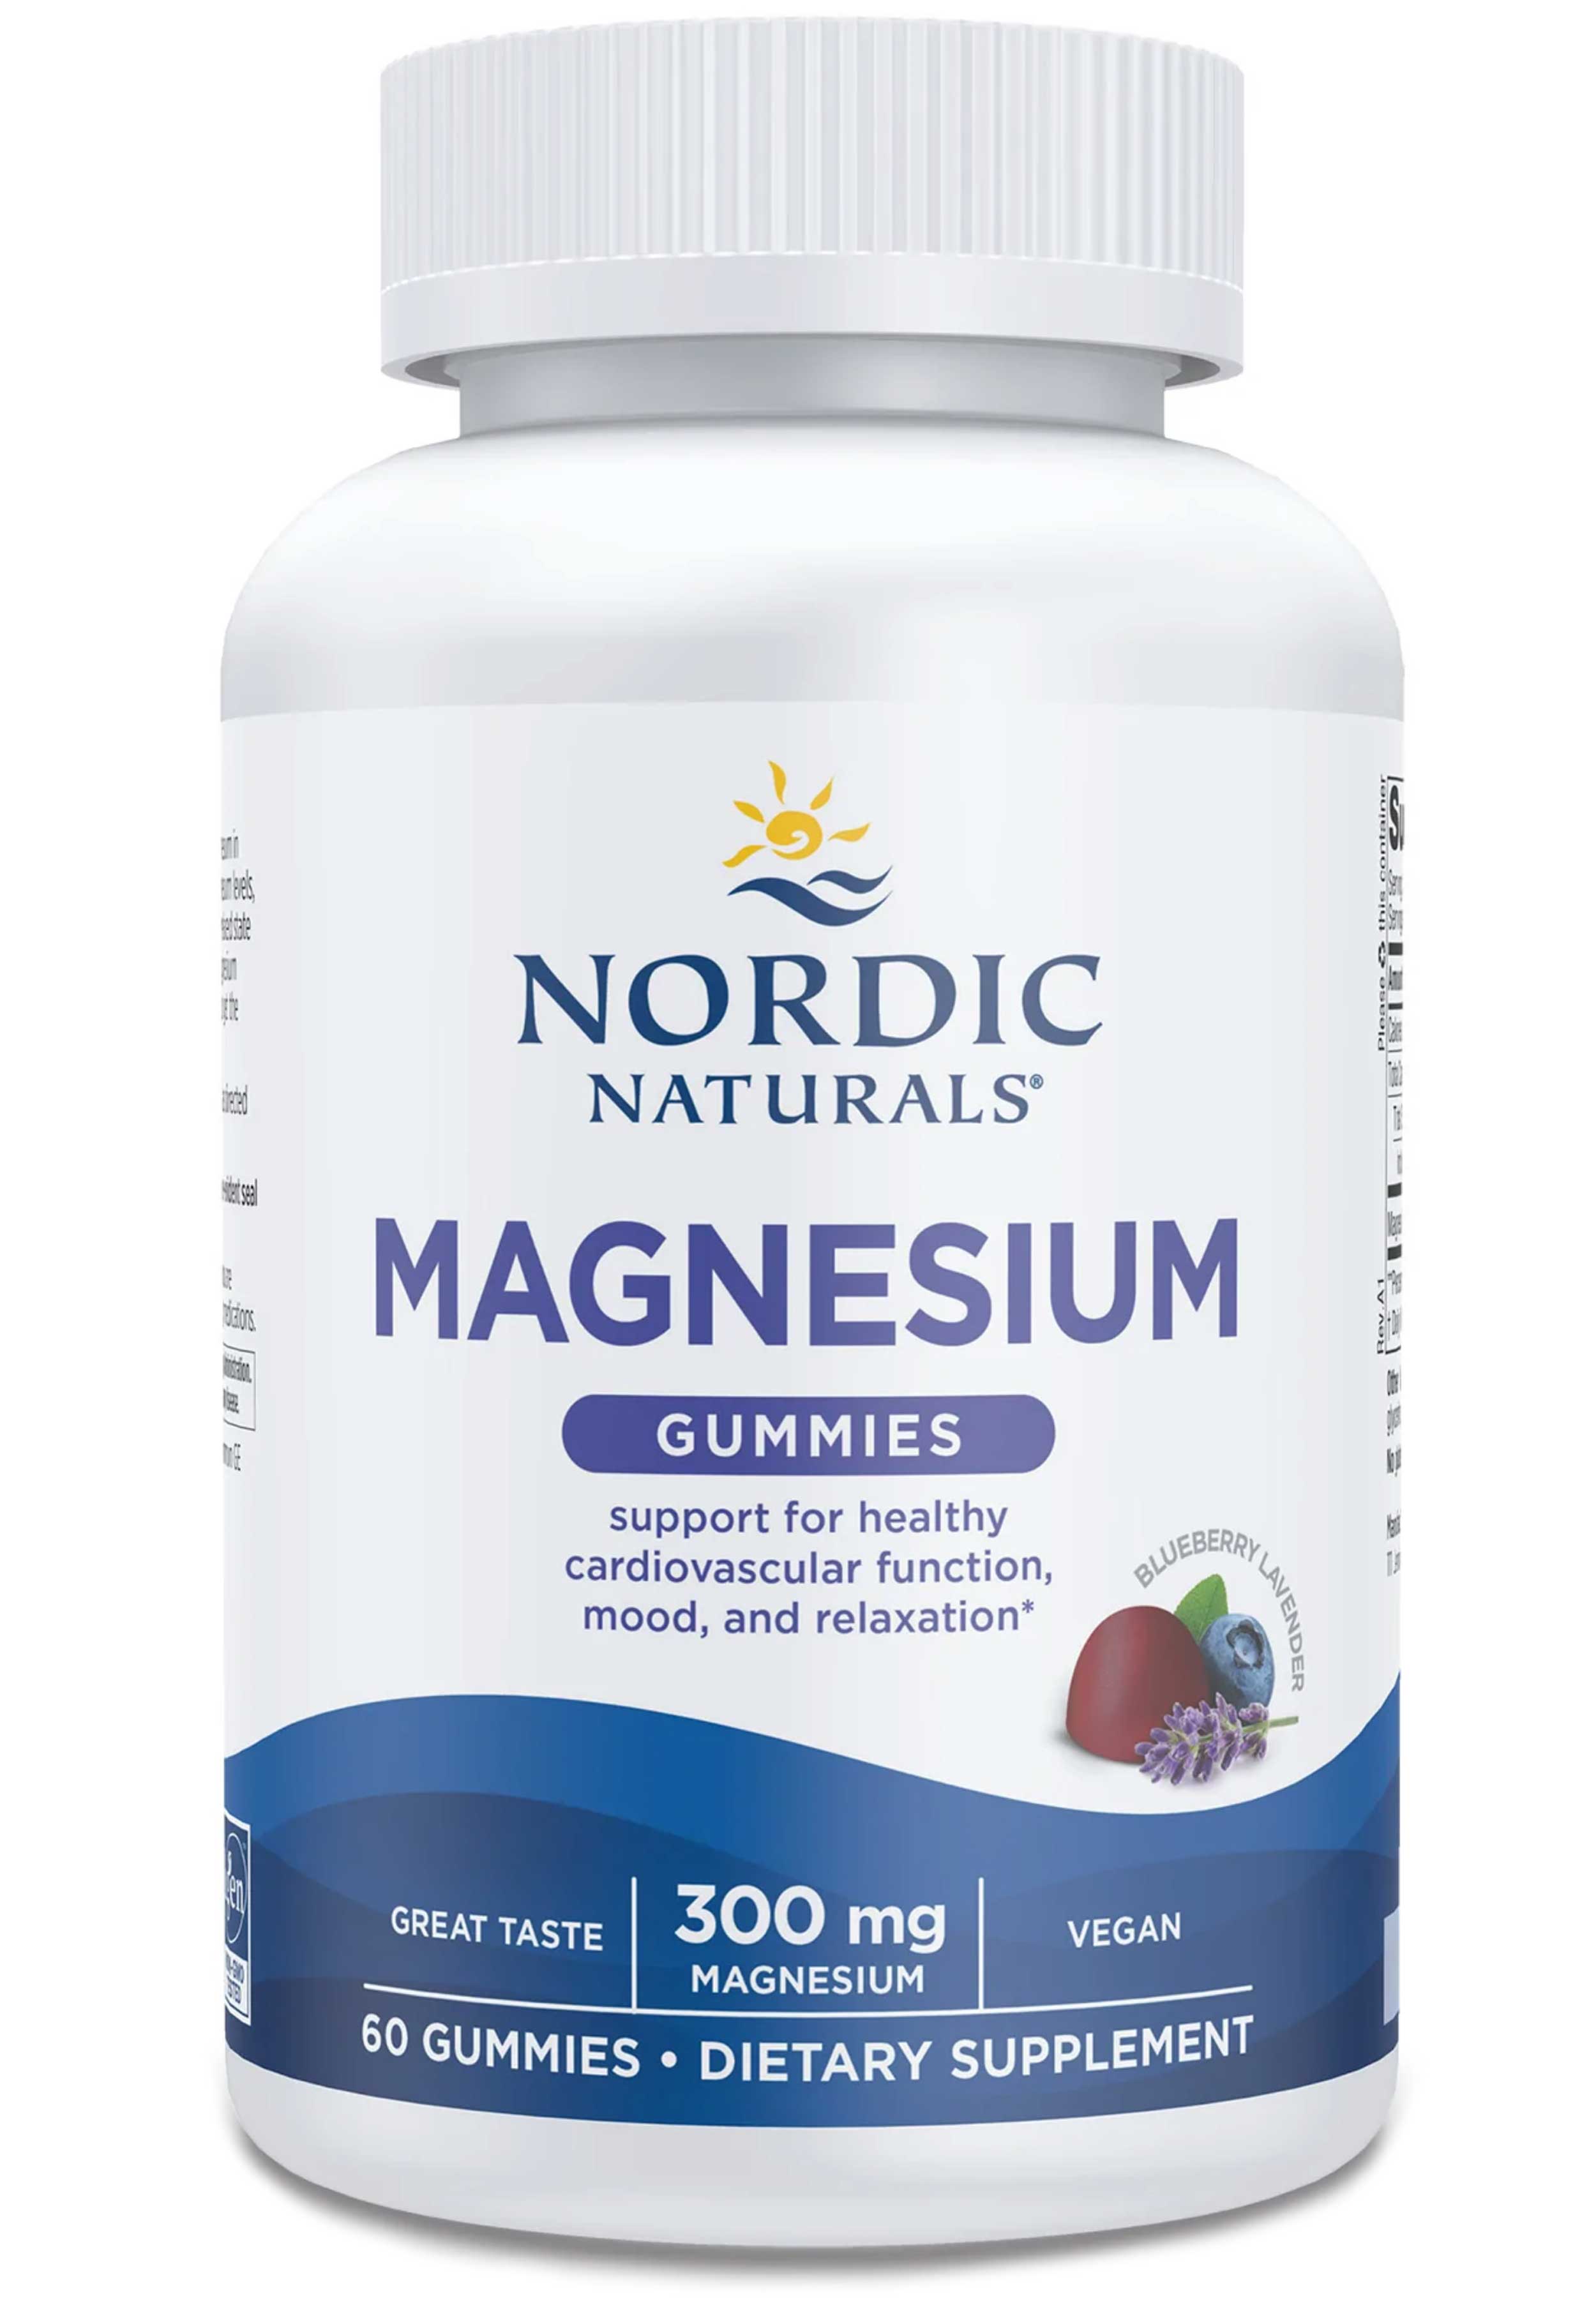 Nordic Naturals Magnesium Gummies